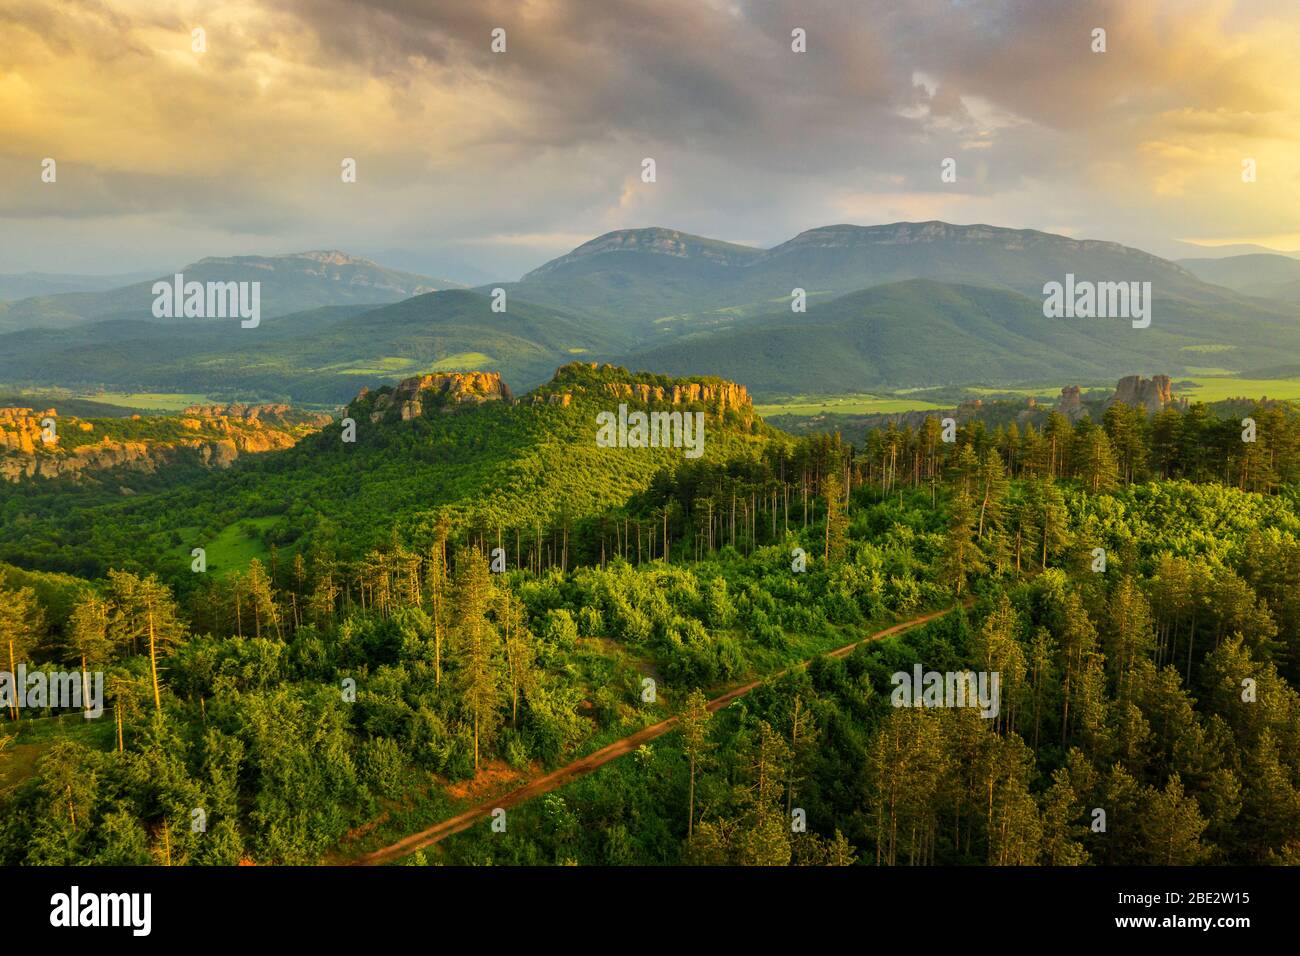 Europe, Bulgarie, Belogradchik, vue aérienne des formations rocheuses et de la forêt Banque D'Images